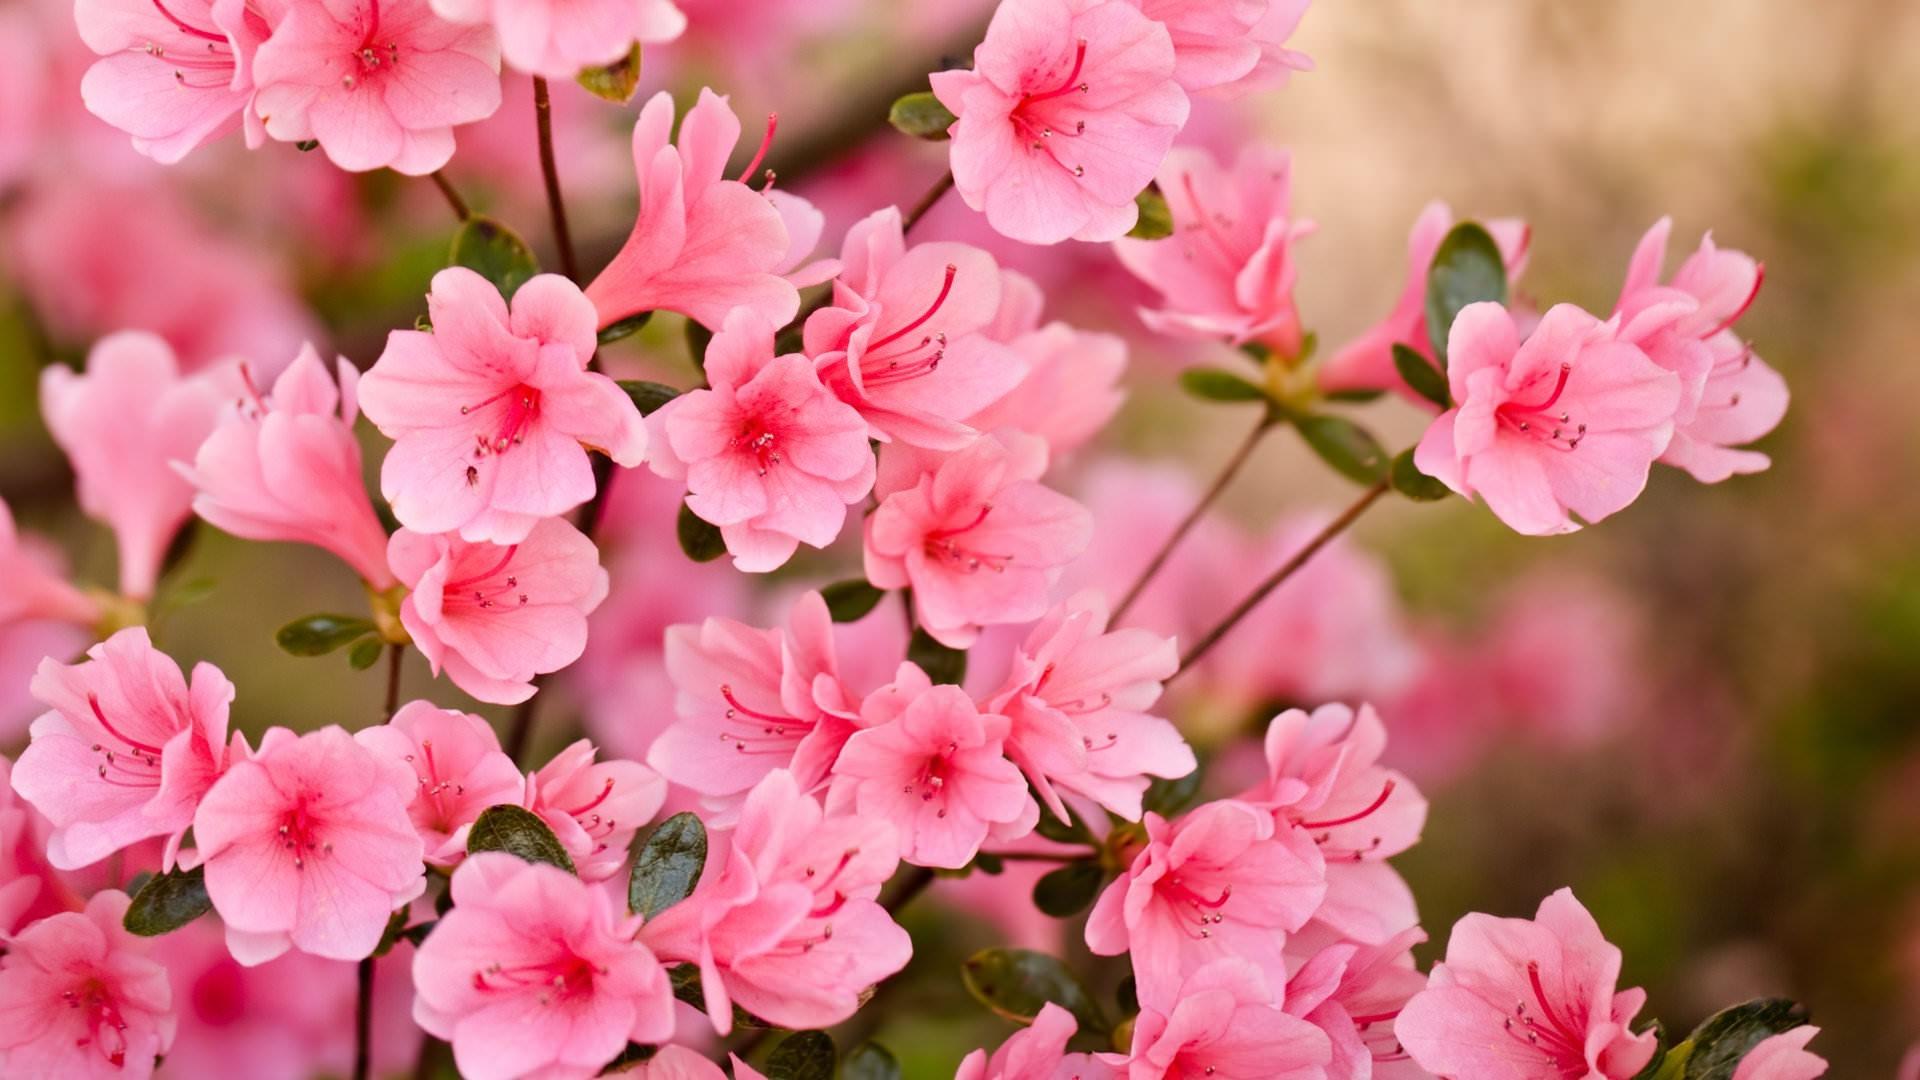 Sakura tree (Cherry Blossom) wallpaper HD for desktop background